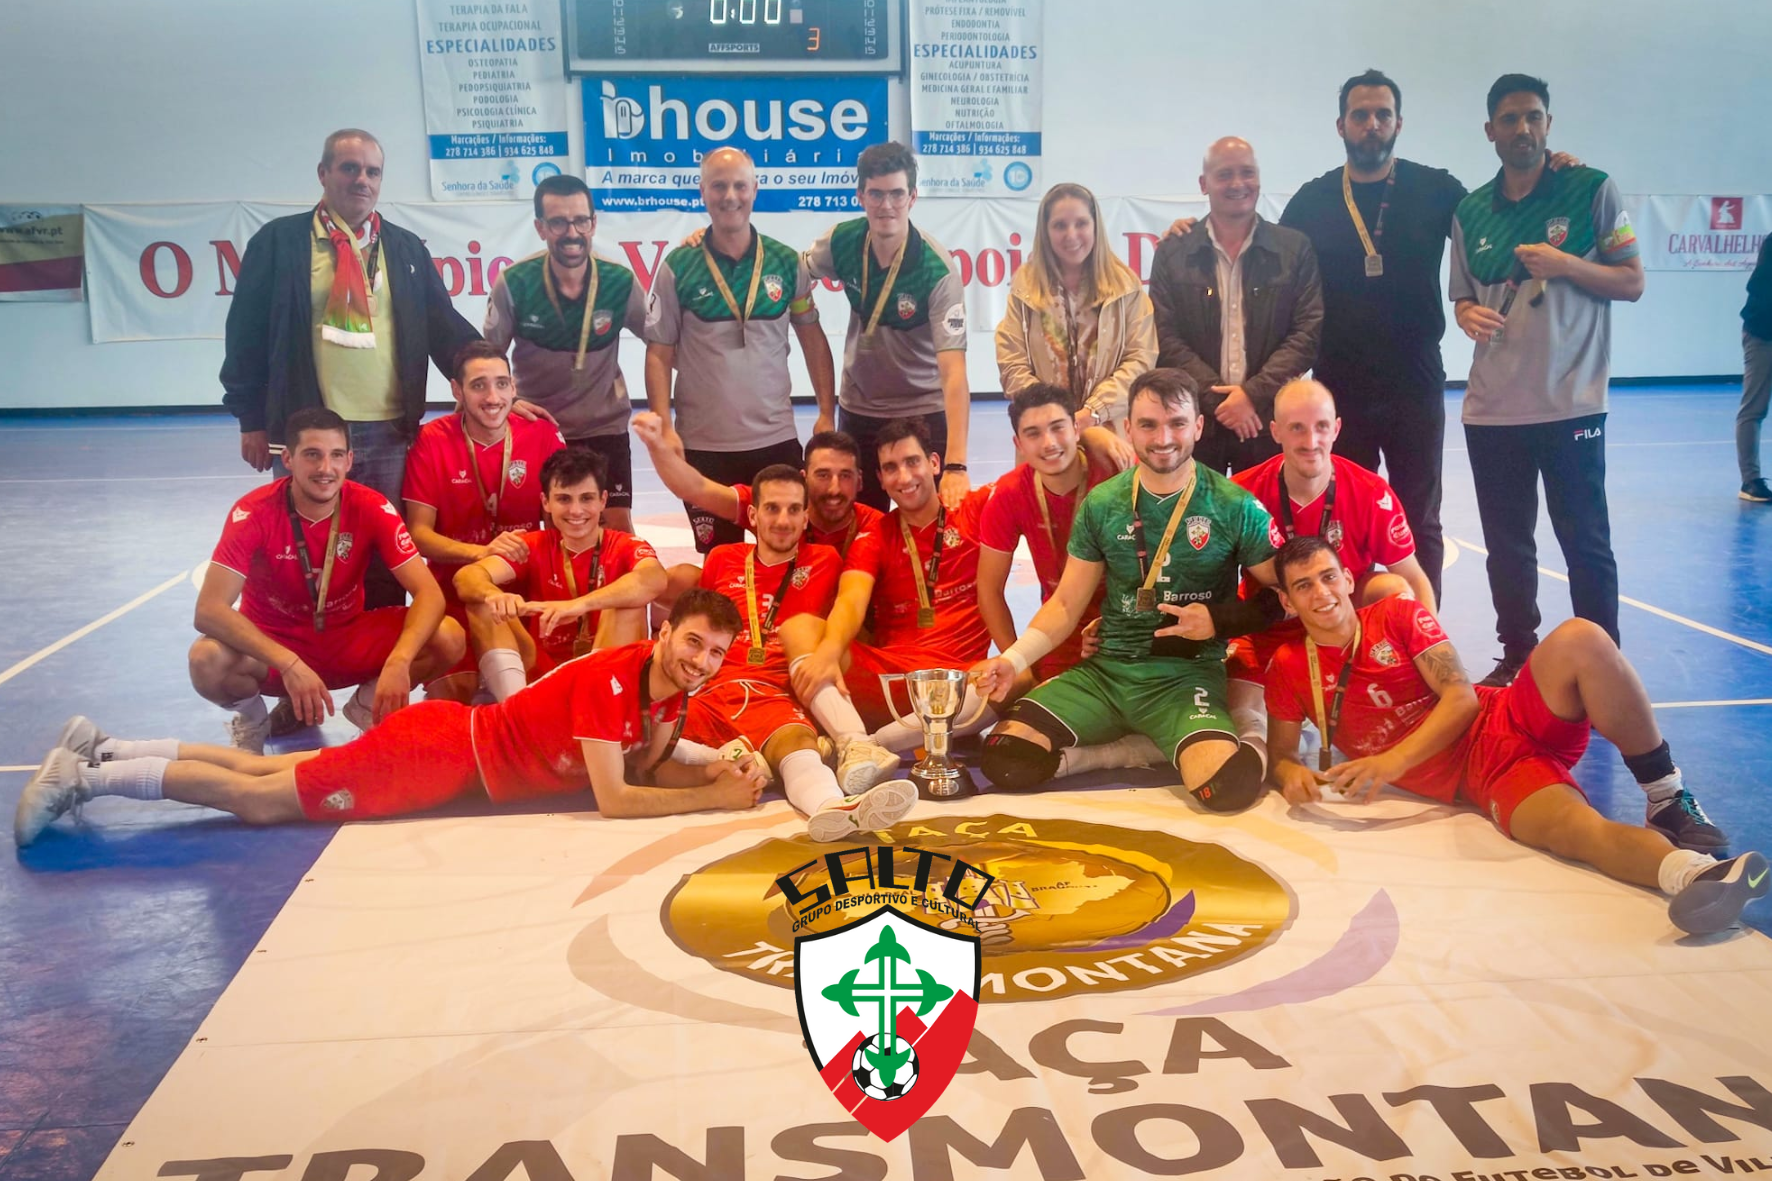 GDC Salto vence a V Edição da Taça Transmontana de Futsal Sénior Masculino